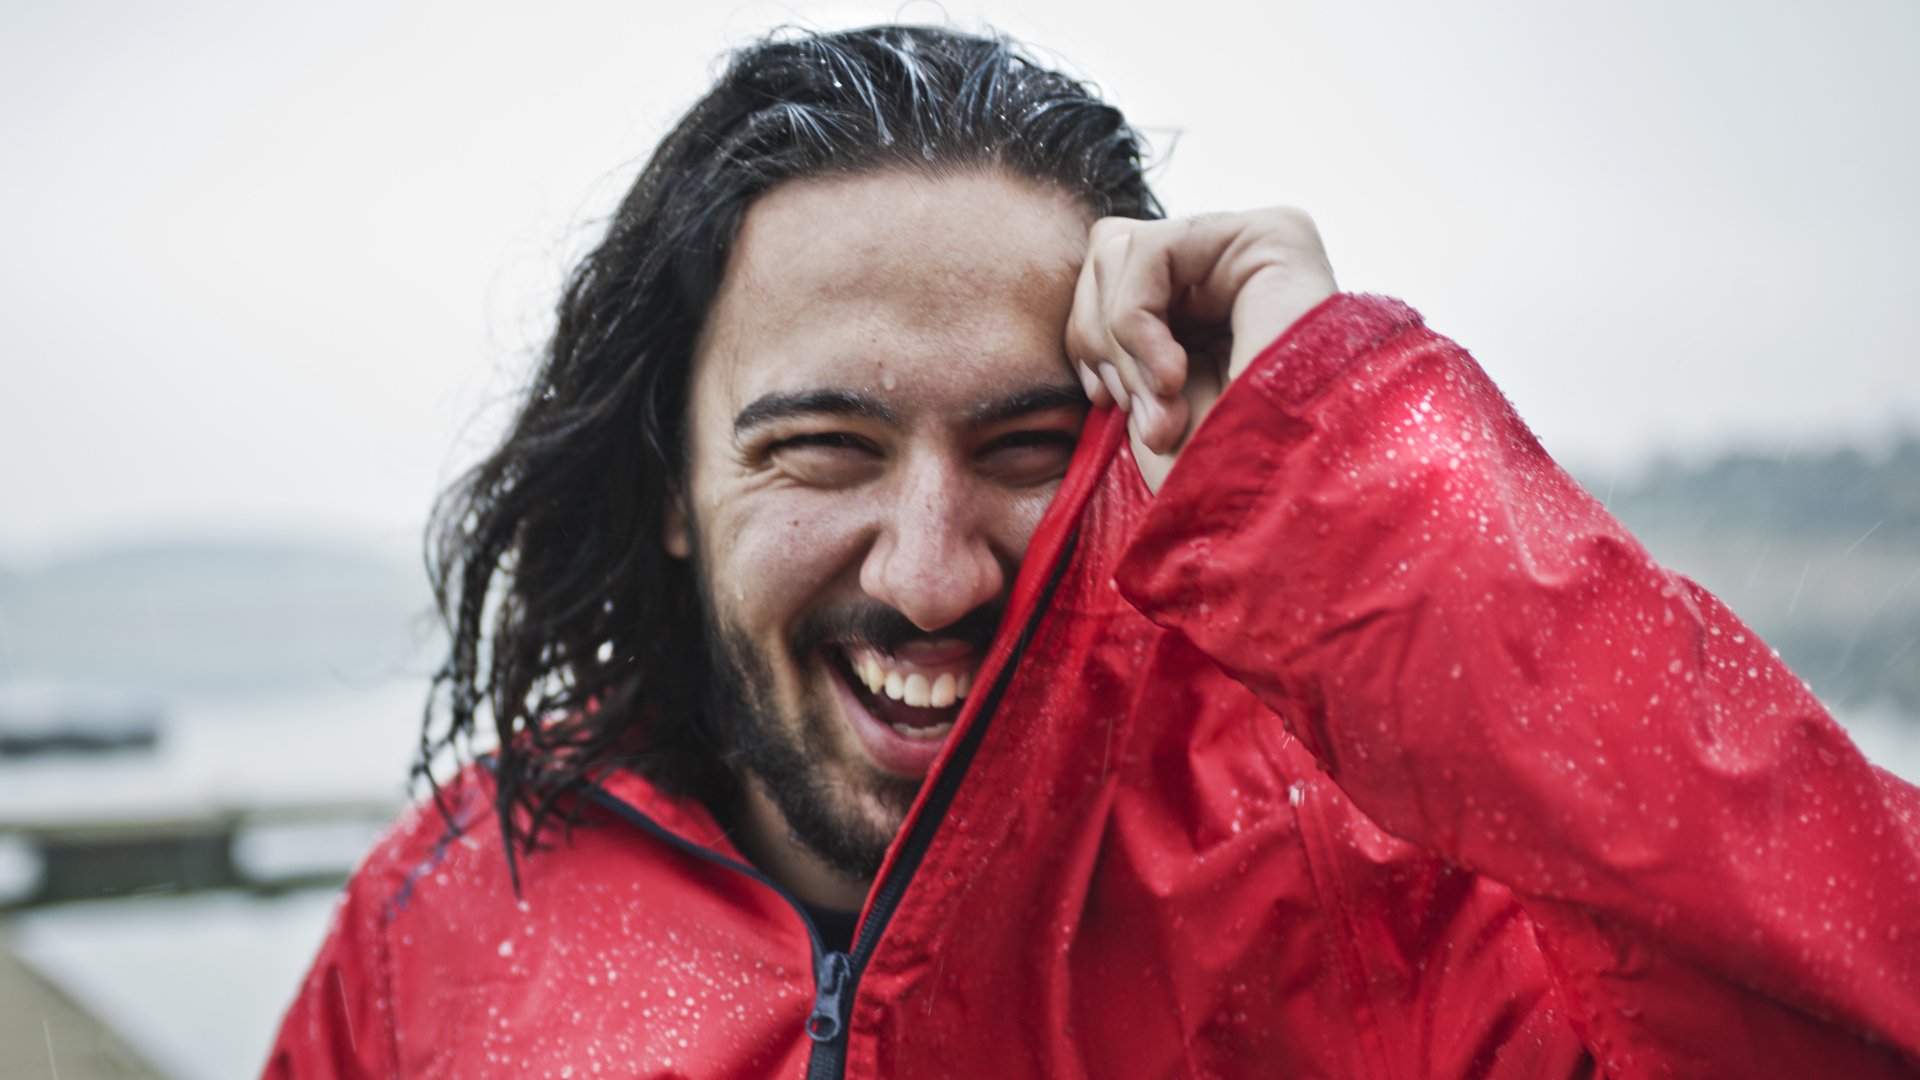 Un hombre con un impermeable rojo se ríe bajo la lluvia